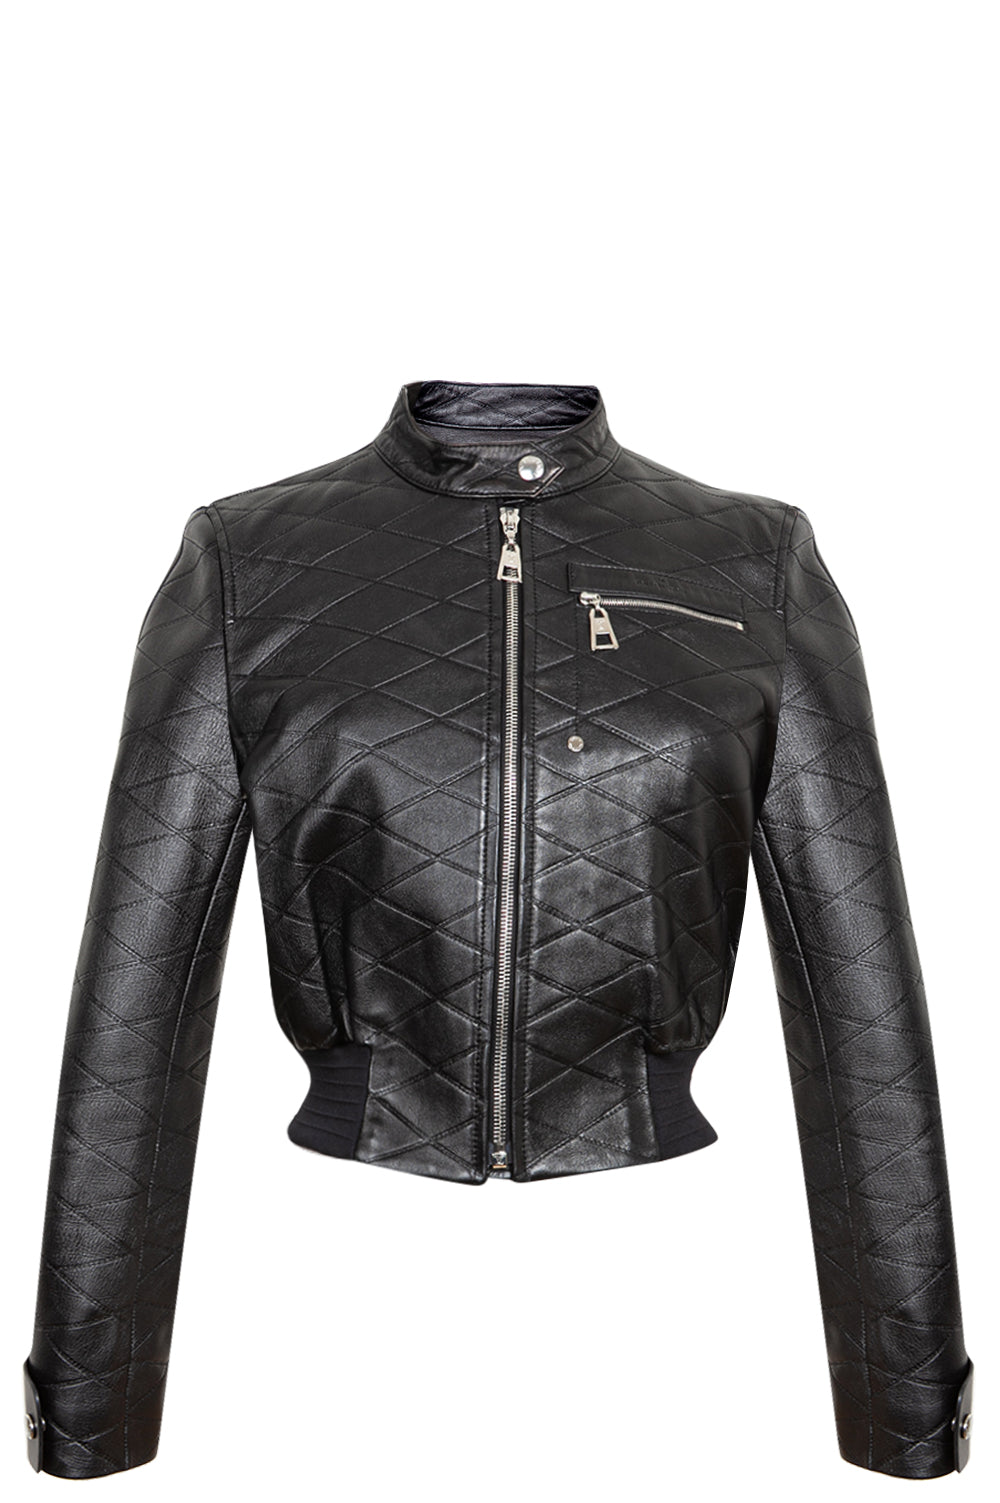 Louis Vuitton Leather Jacket Black 